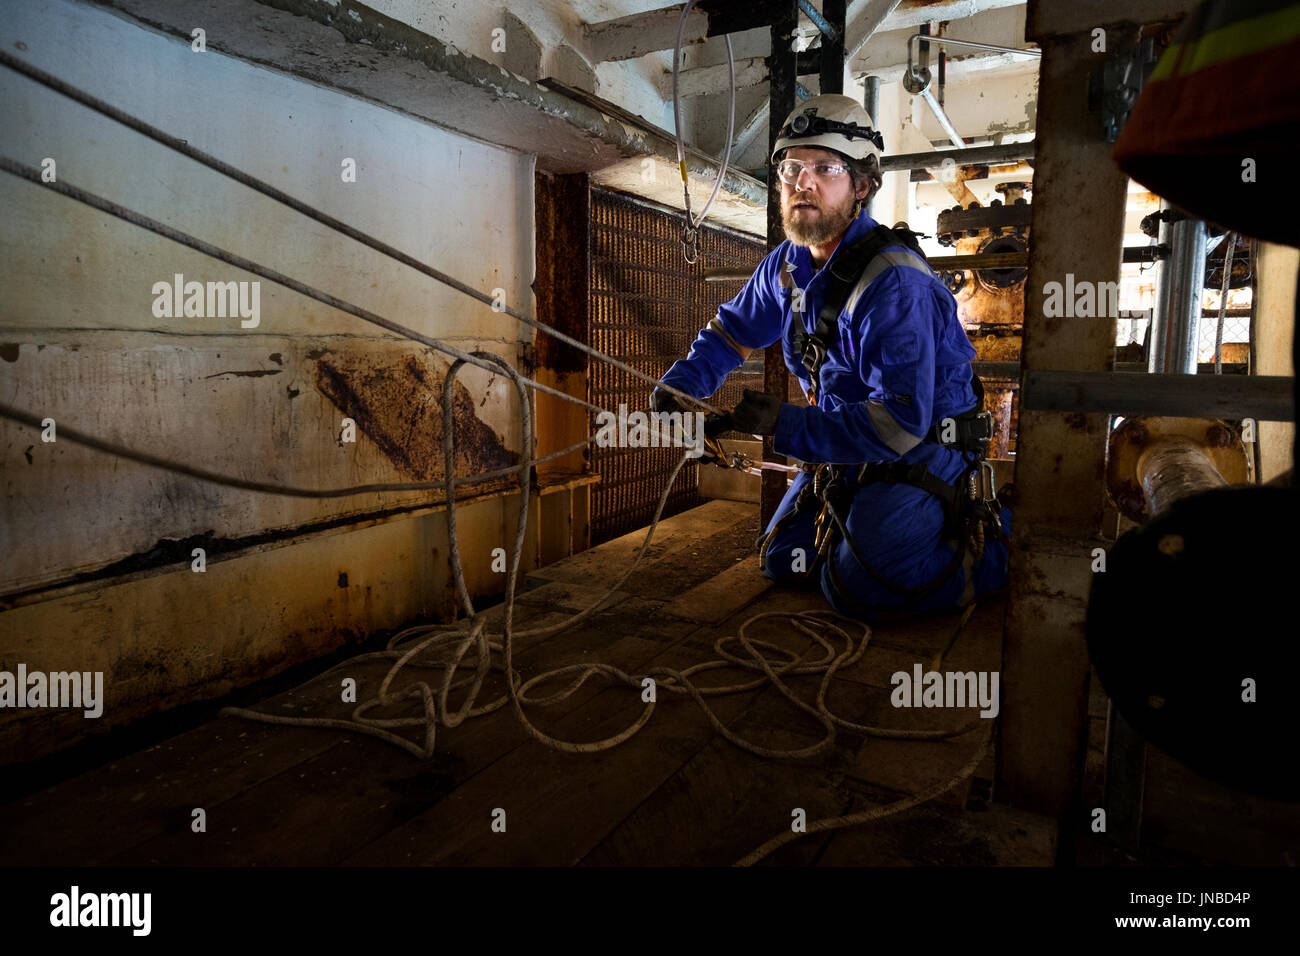 Une corde industriel technicien d'accès mise en place d'un système de transport recsue, vêtu d'une combinaison bleu. crédit : lee ramsden / alamy Banque D'Images